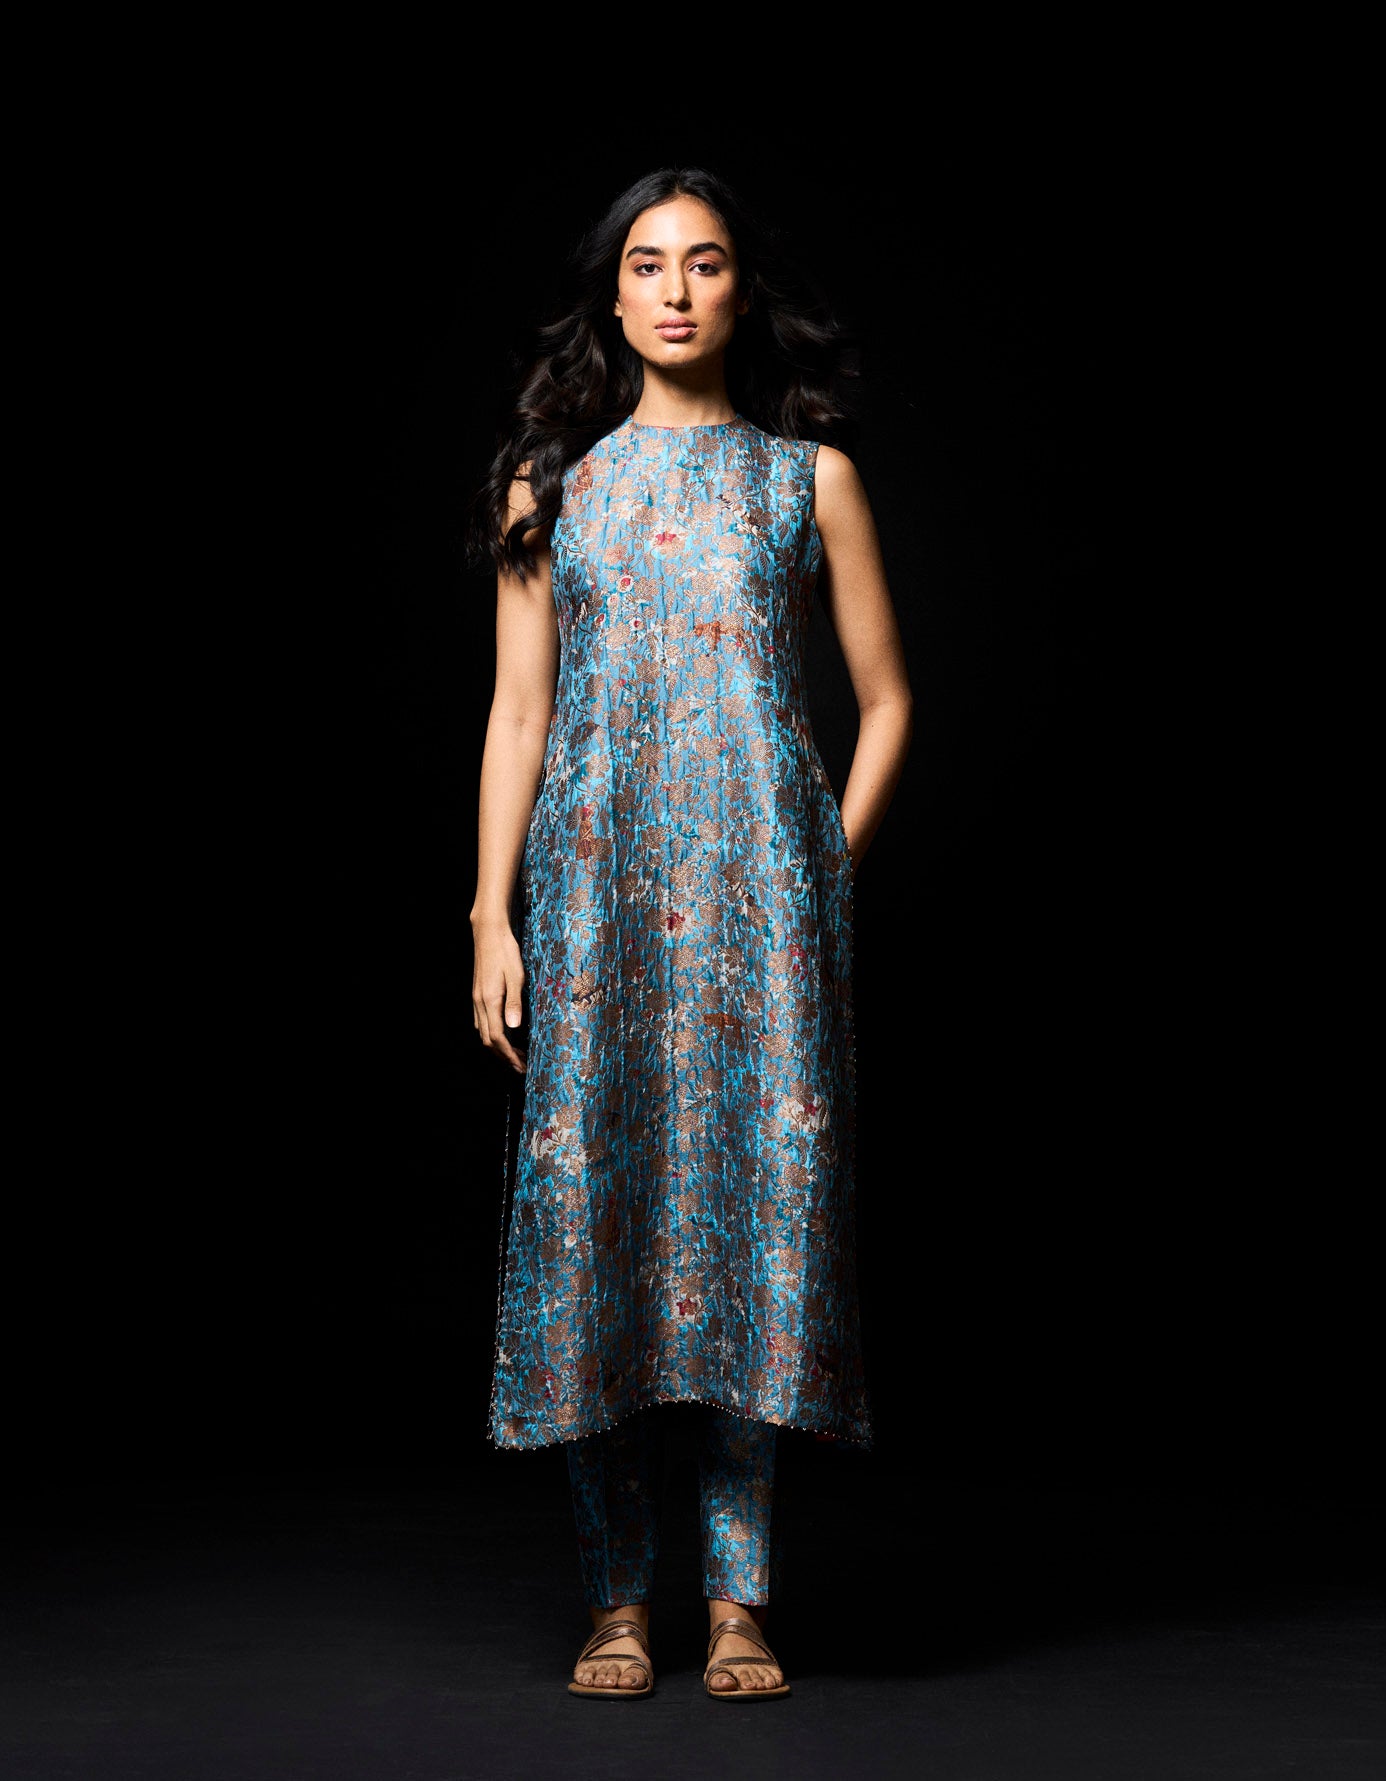 Brocade | Long kurti designs, Designer kurti patterns, Indian fashion